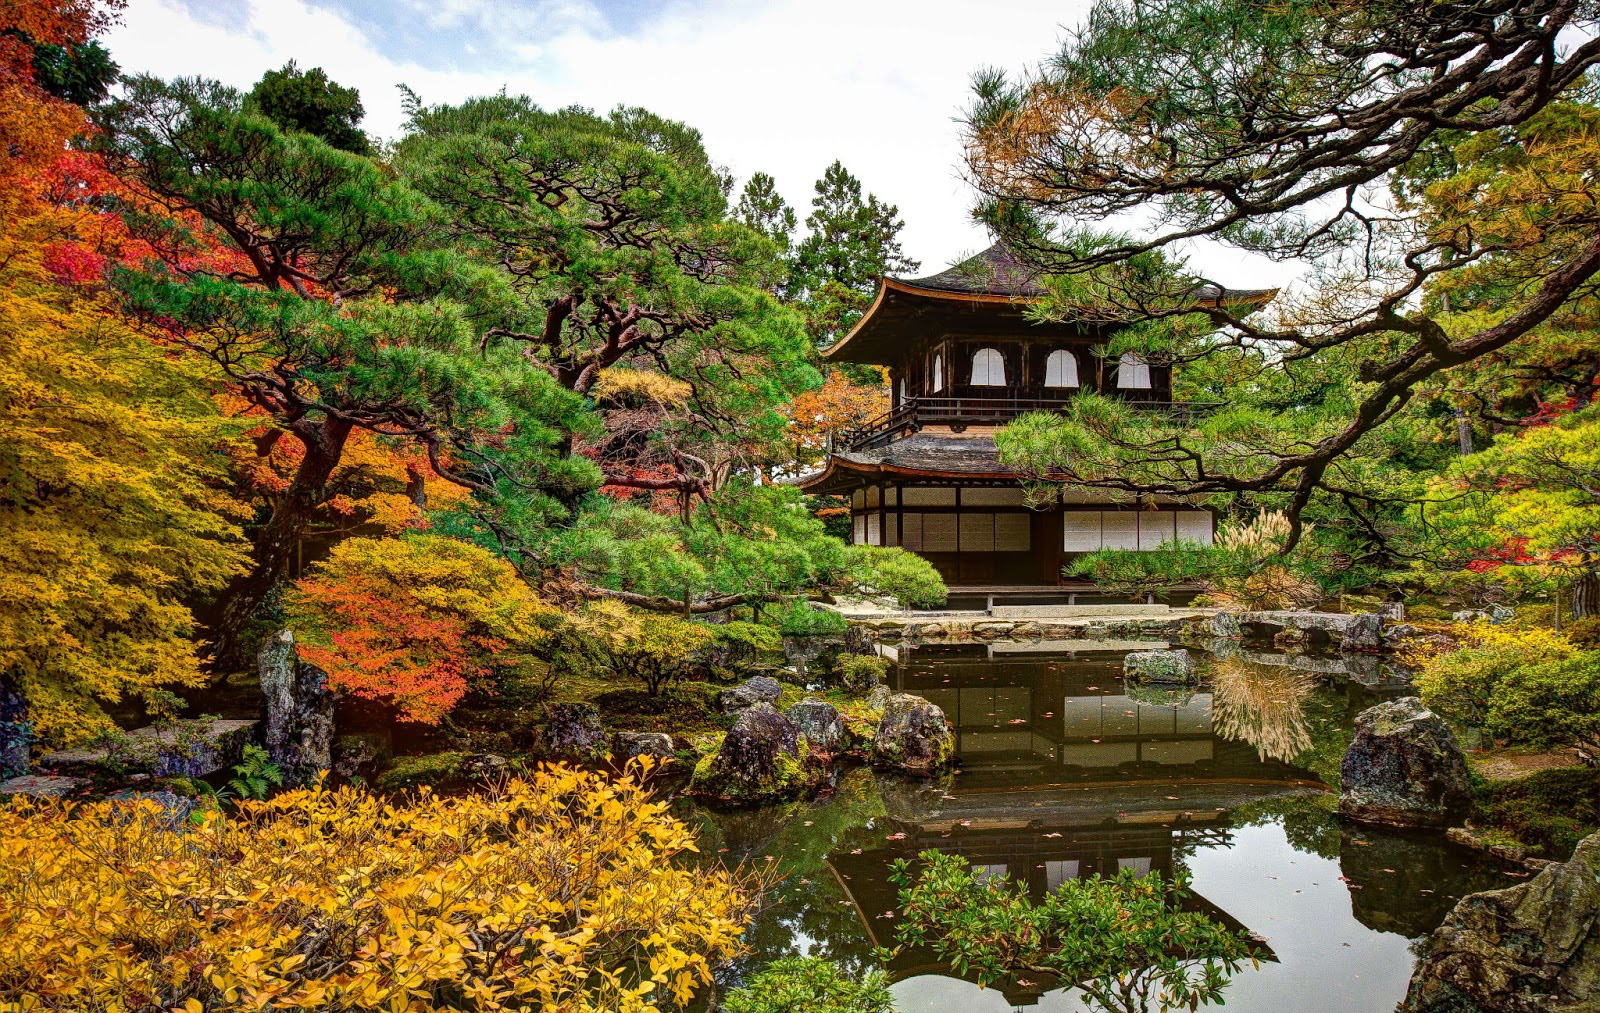 Không có màu bạc hoàn toàn như cái tên gọi của mình nhưng đền Silver Ginkakuji lại có một lối kiến trúc vô cùng ấn tượng và tinh tế. Ngôi đền này không mở cửa cho khách thăm quan, nhưng du khách có thể ngắm ngôi đền từ khu vườn nhỏ trước đền.